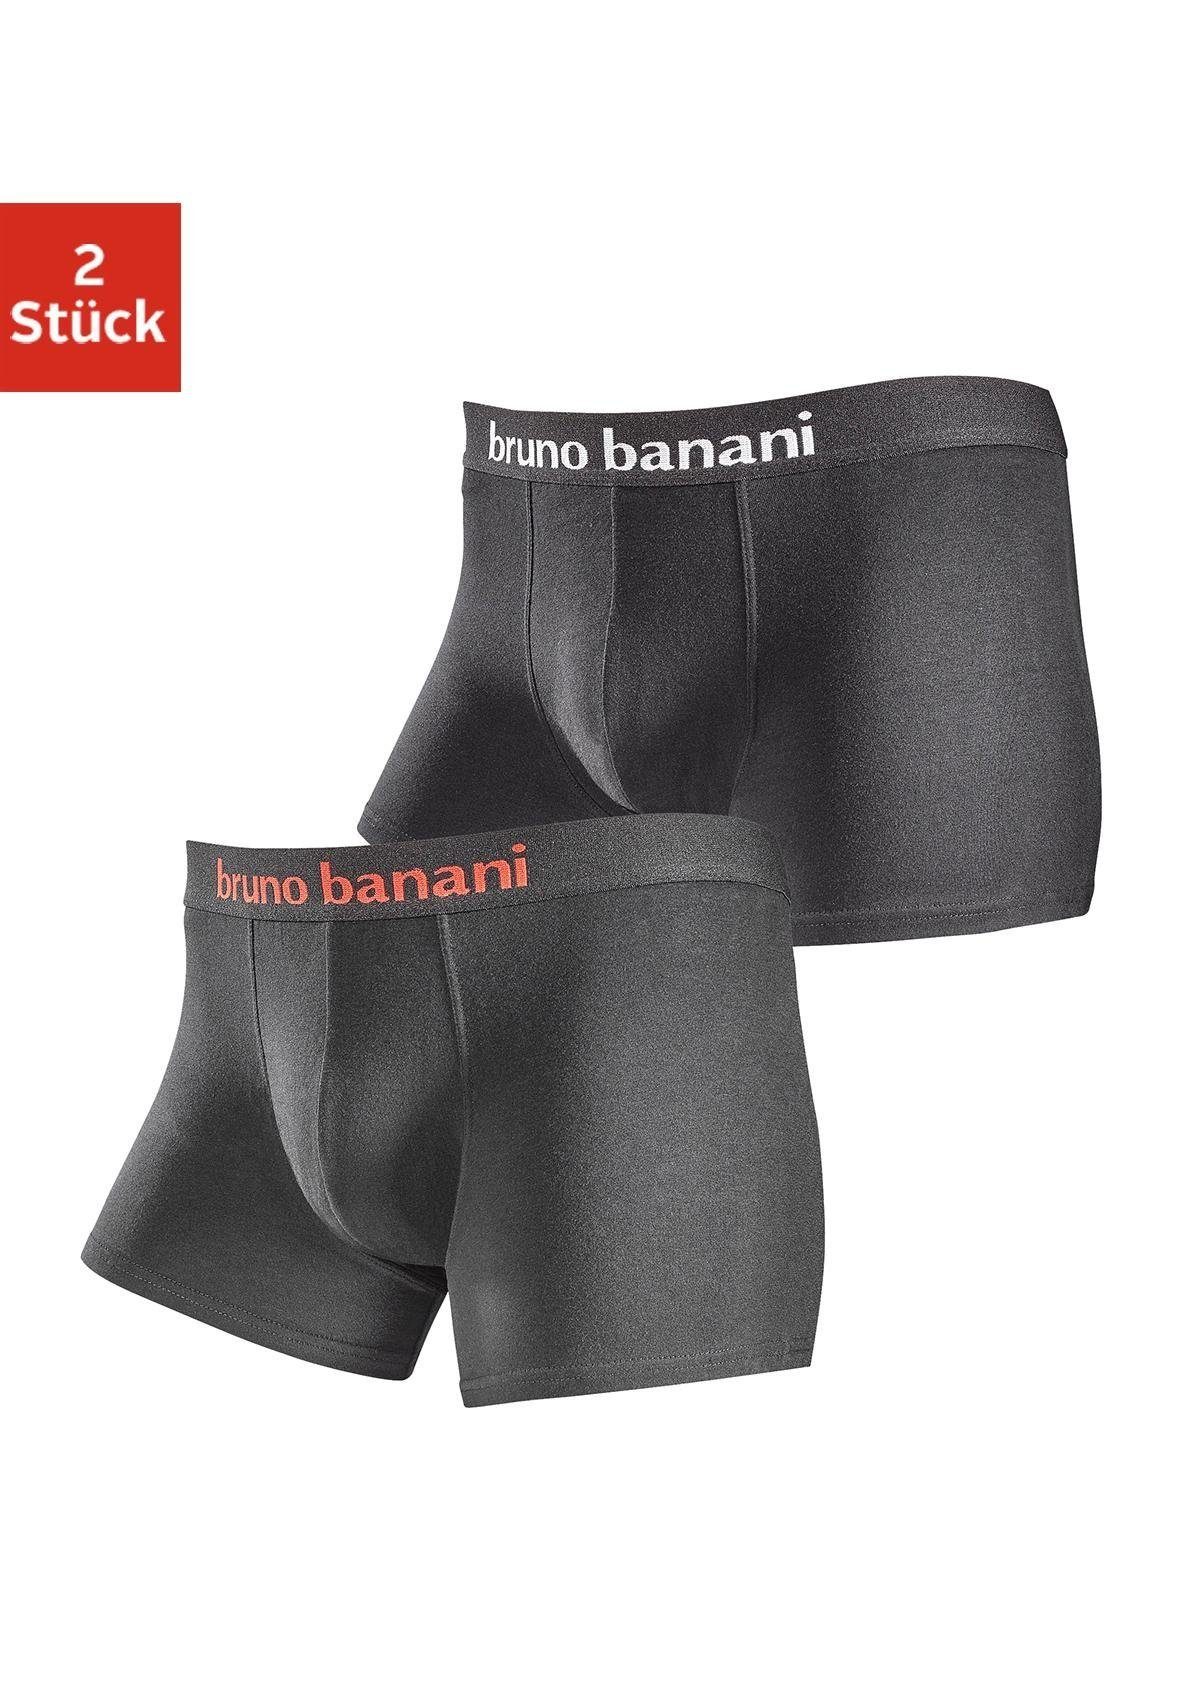 Bruno Banani Boxer (Packung, 2-St) in schlichtem Design schwarz-rot, schwarz-weiß